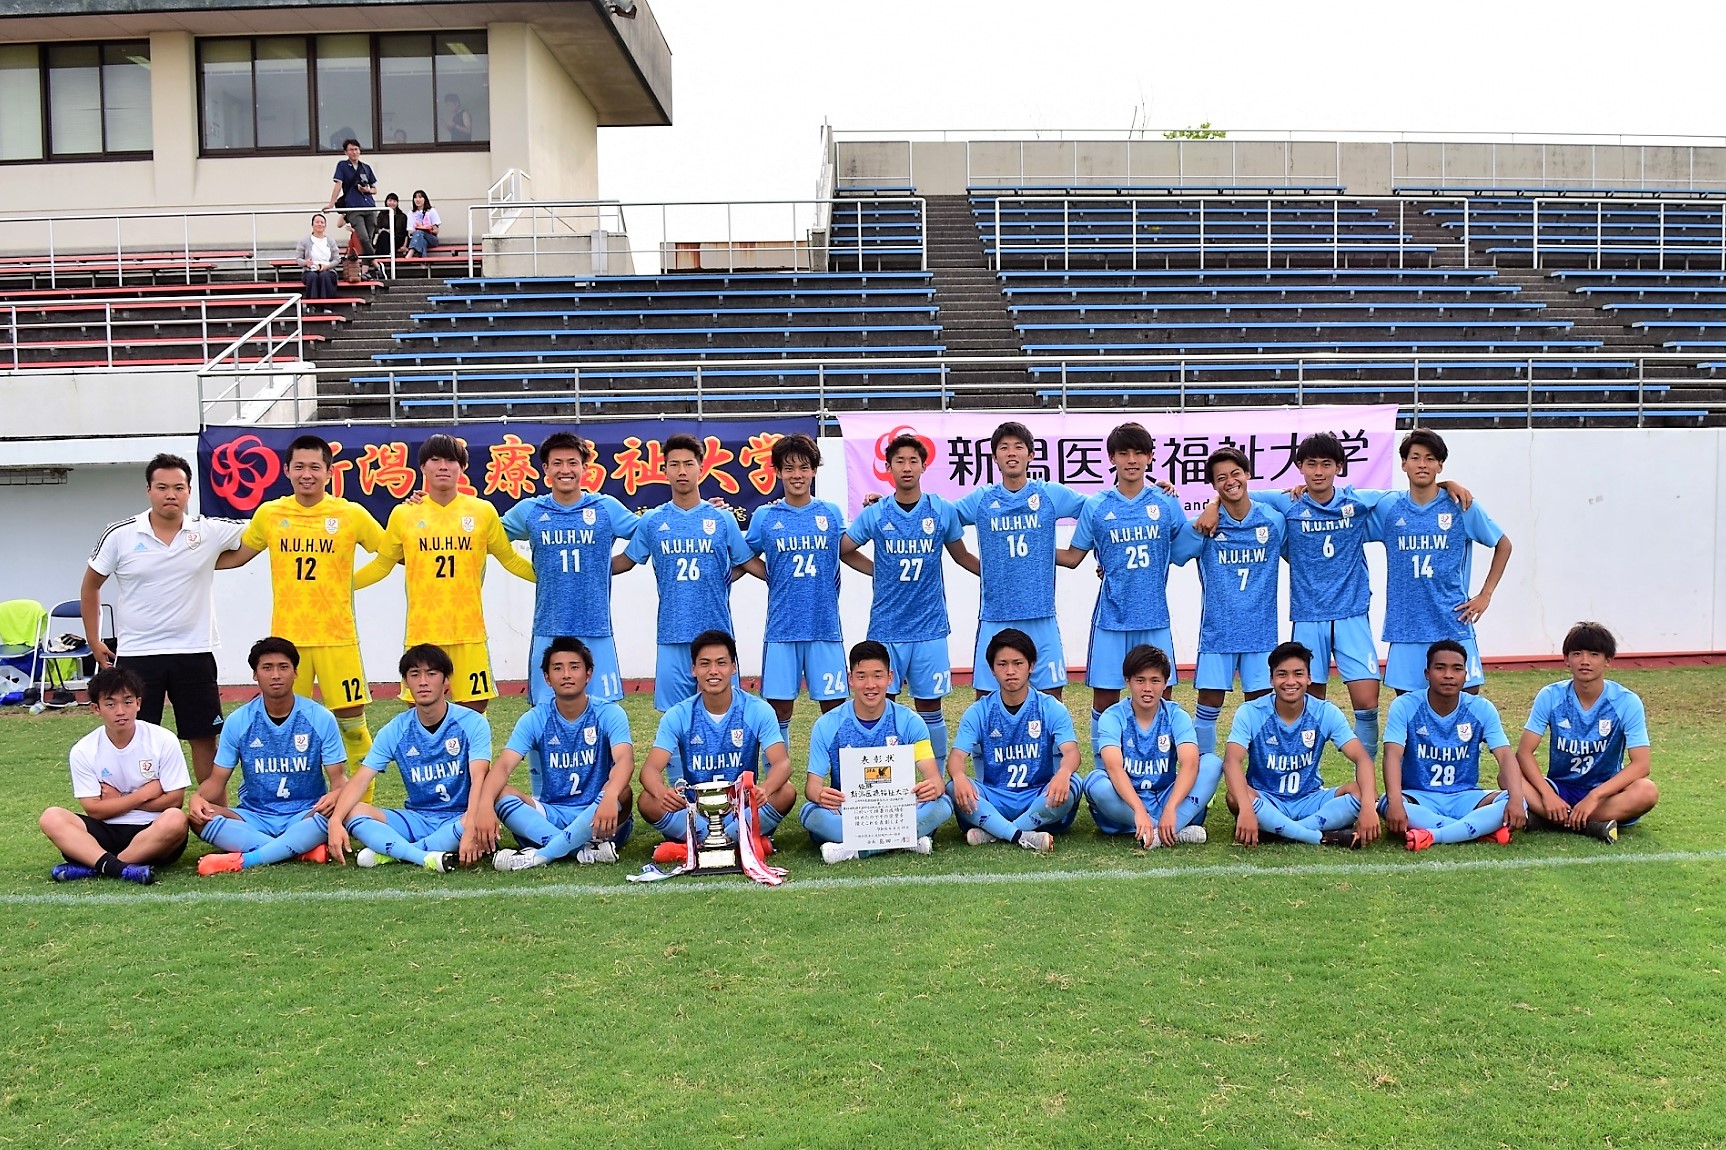 新潟医療福祉大学 男子サッカー部 昨年の悔しさを胸に 総理大臣杯日本大学サッカートーナメントに出場 ｎｓｇグループのプレスリリース